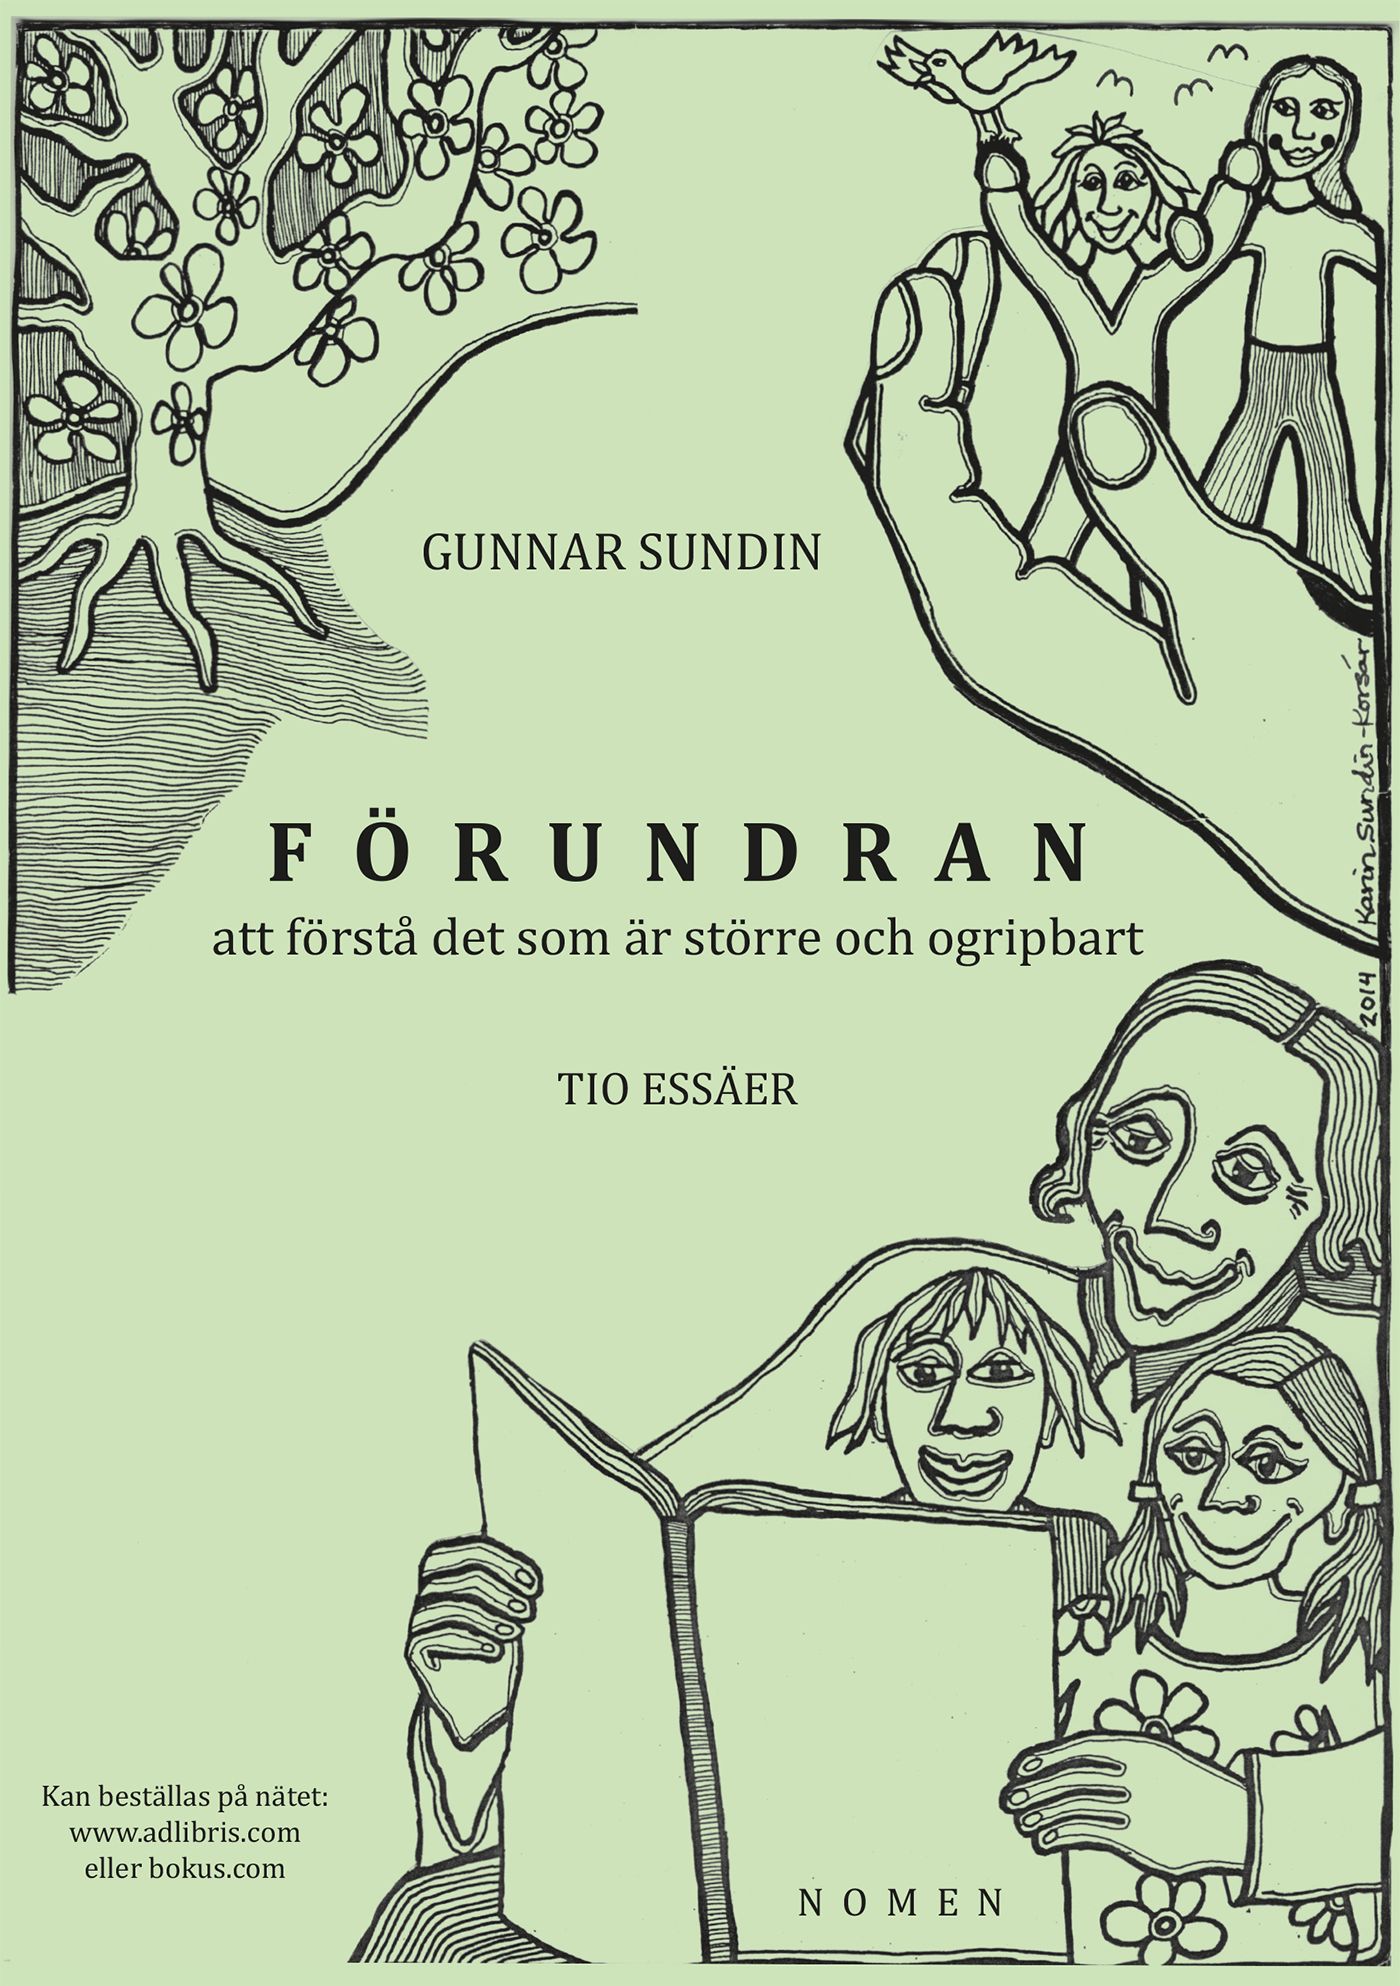 FÖRUNDRAN att förstå det som är större och ogripbart, e-bog af Gunnar Sundin